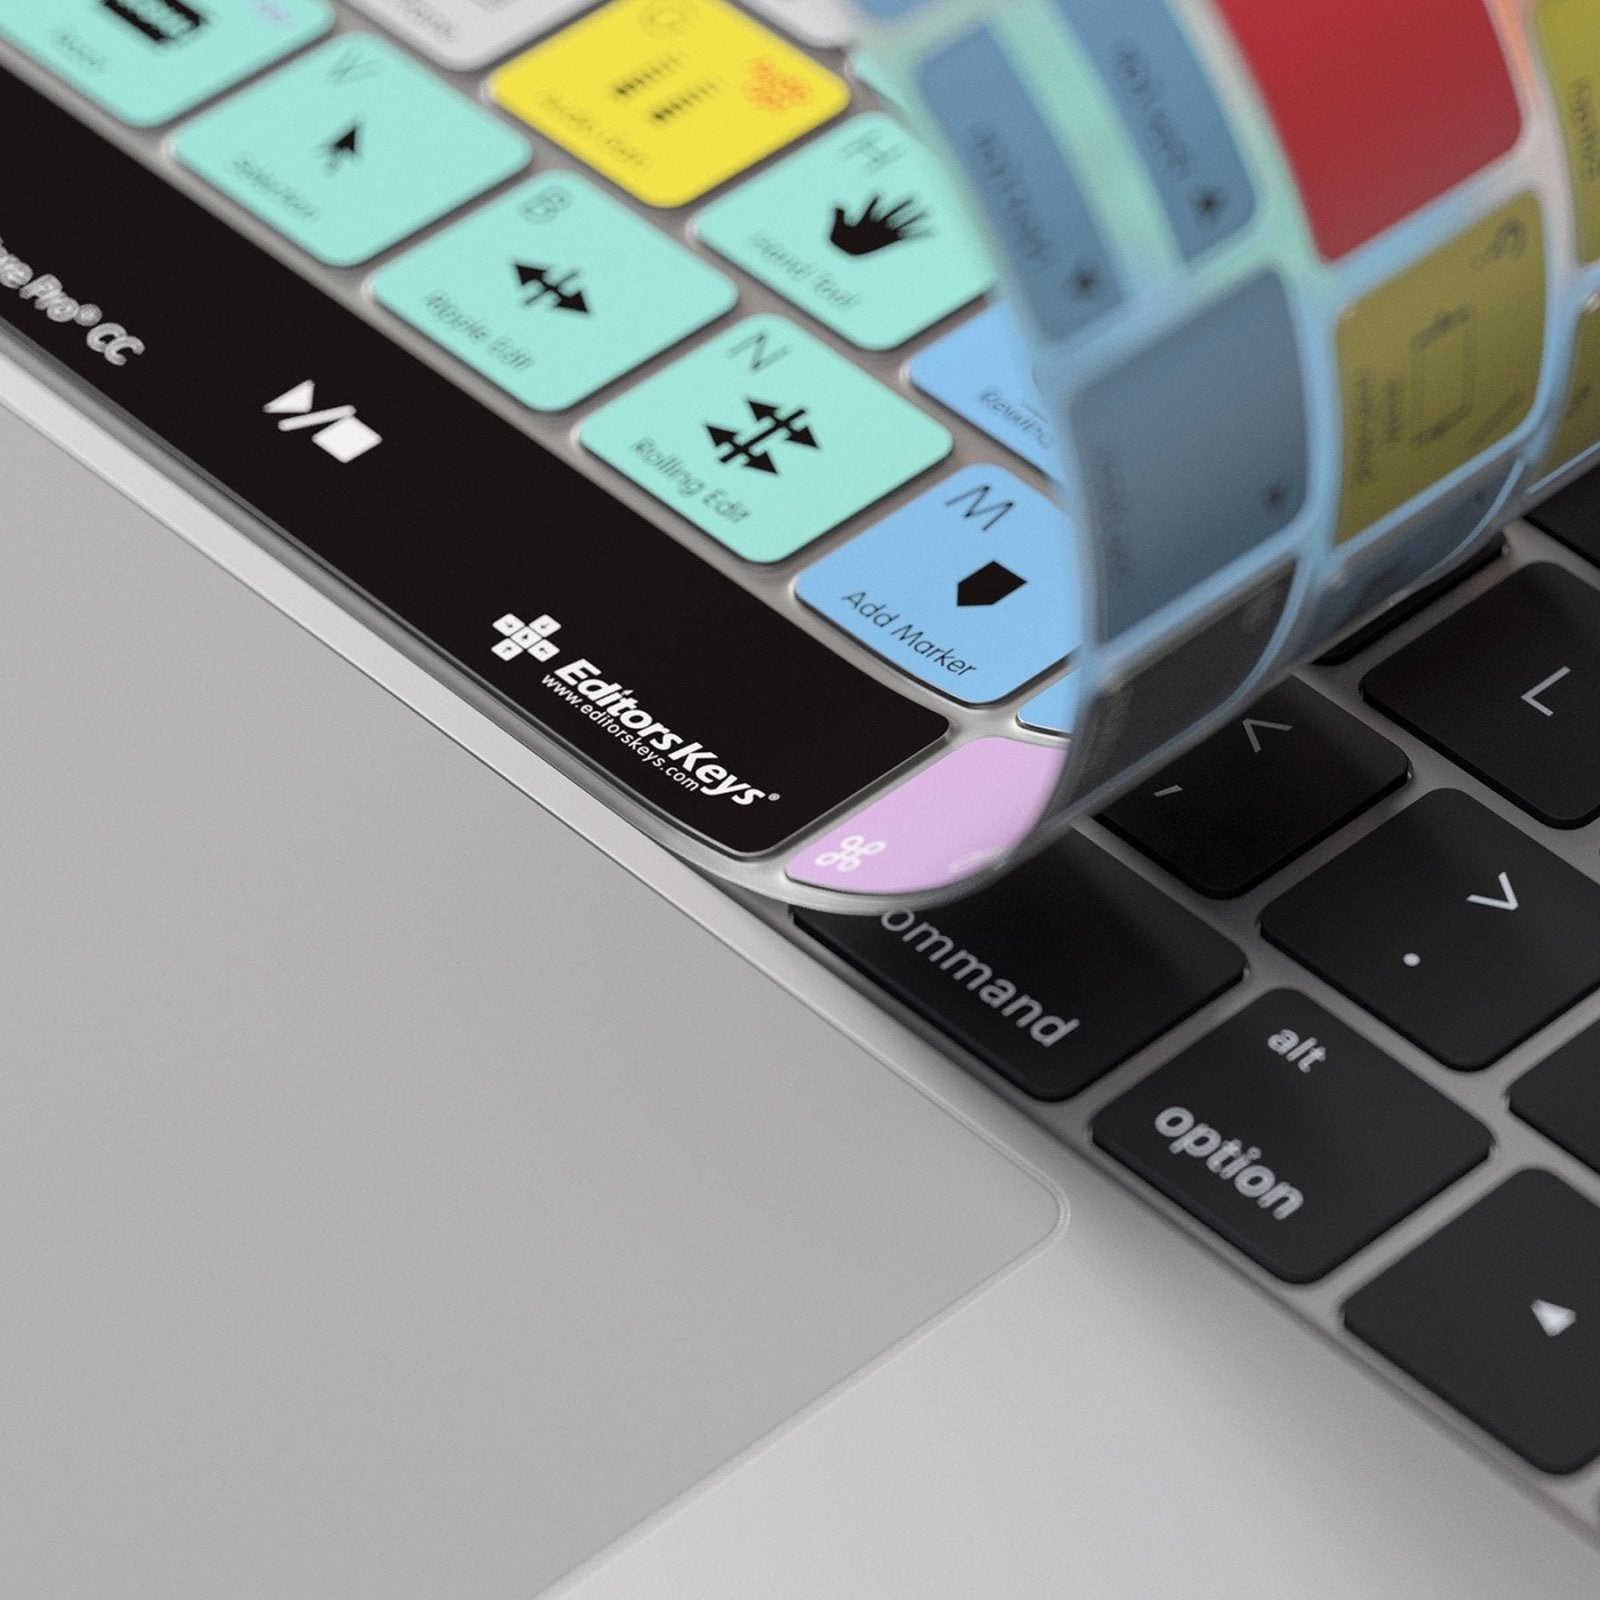 Adobe Premiere Keyboard Stickers, Mac